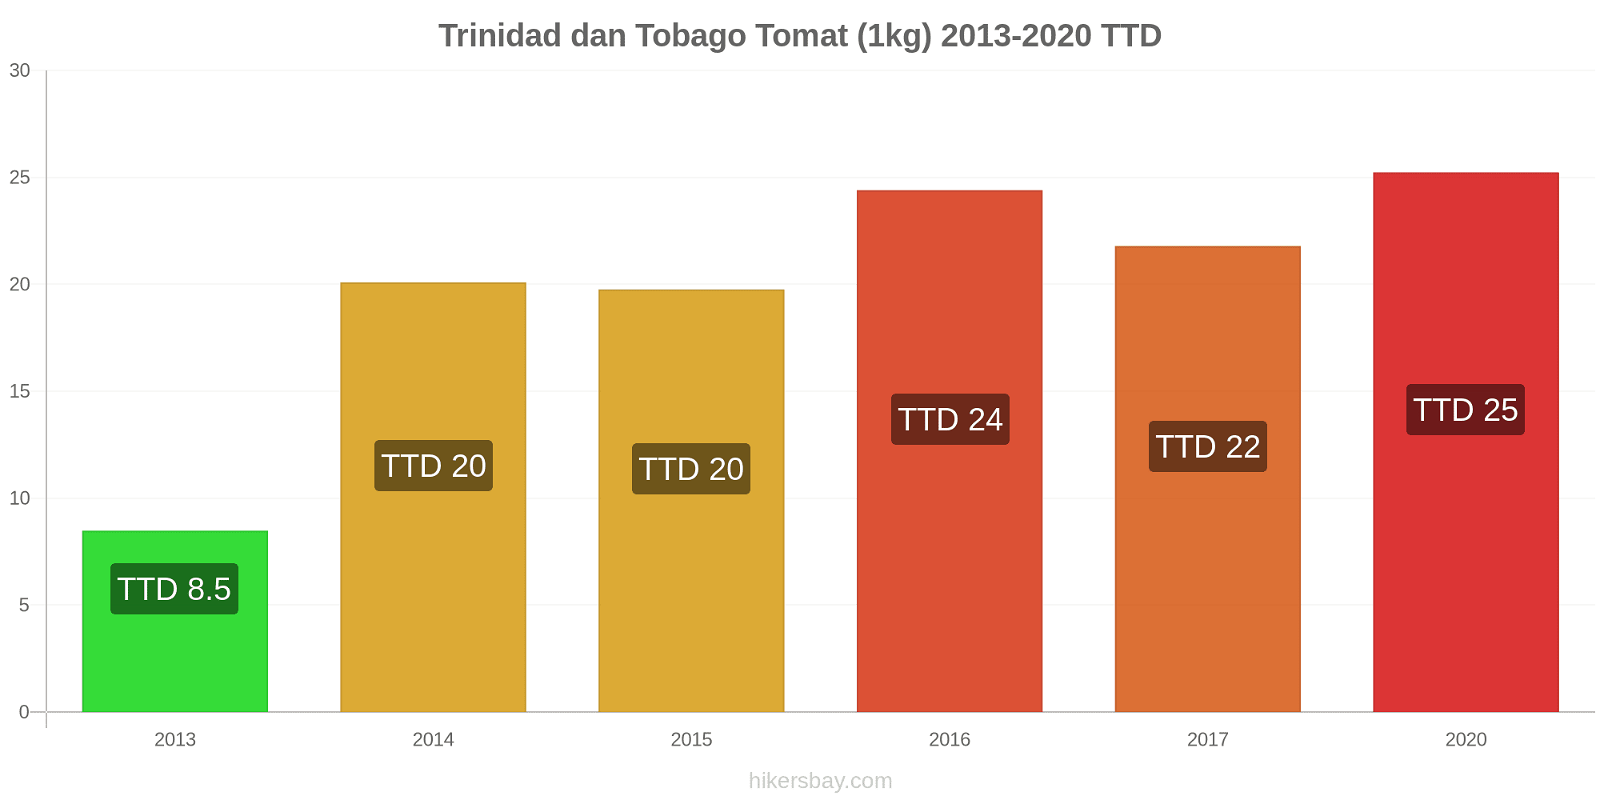 Trinidad dan Tobago perubahan harga Tomat (1kg) hikersbay.com